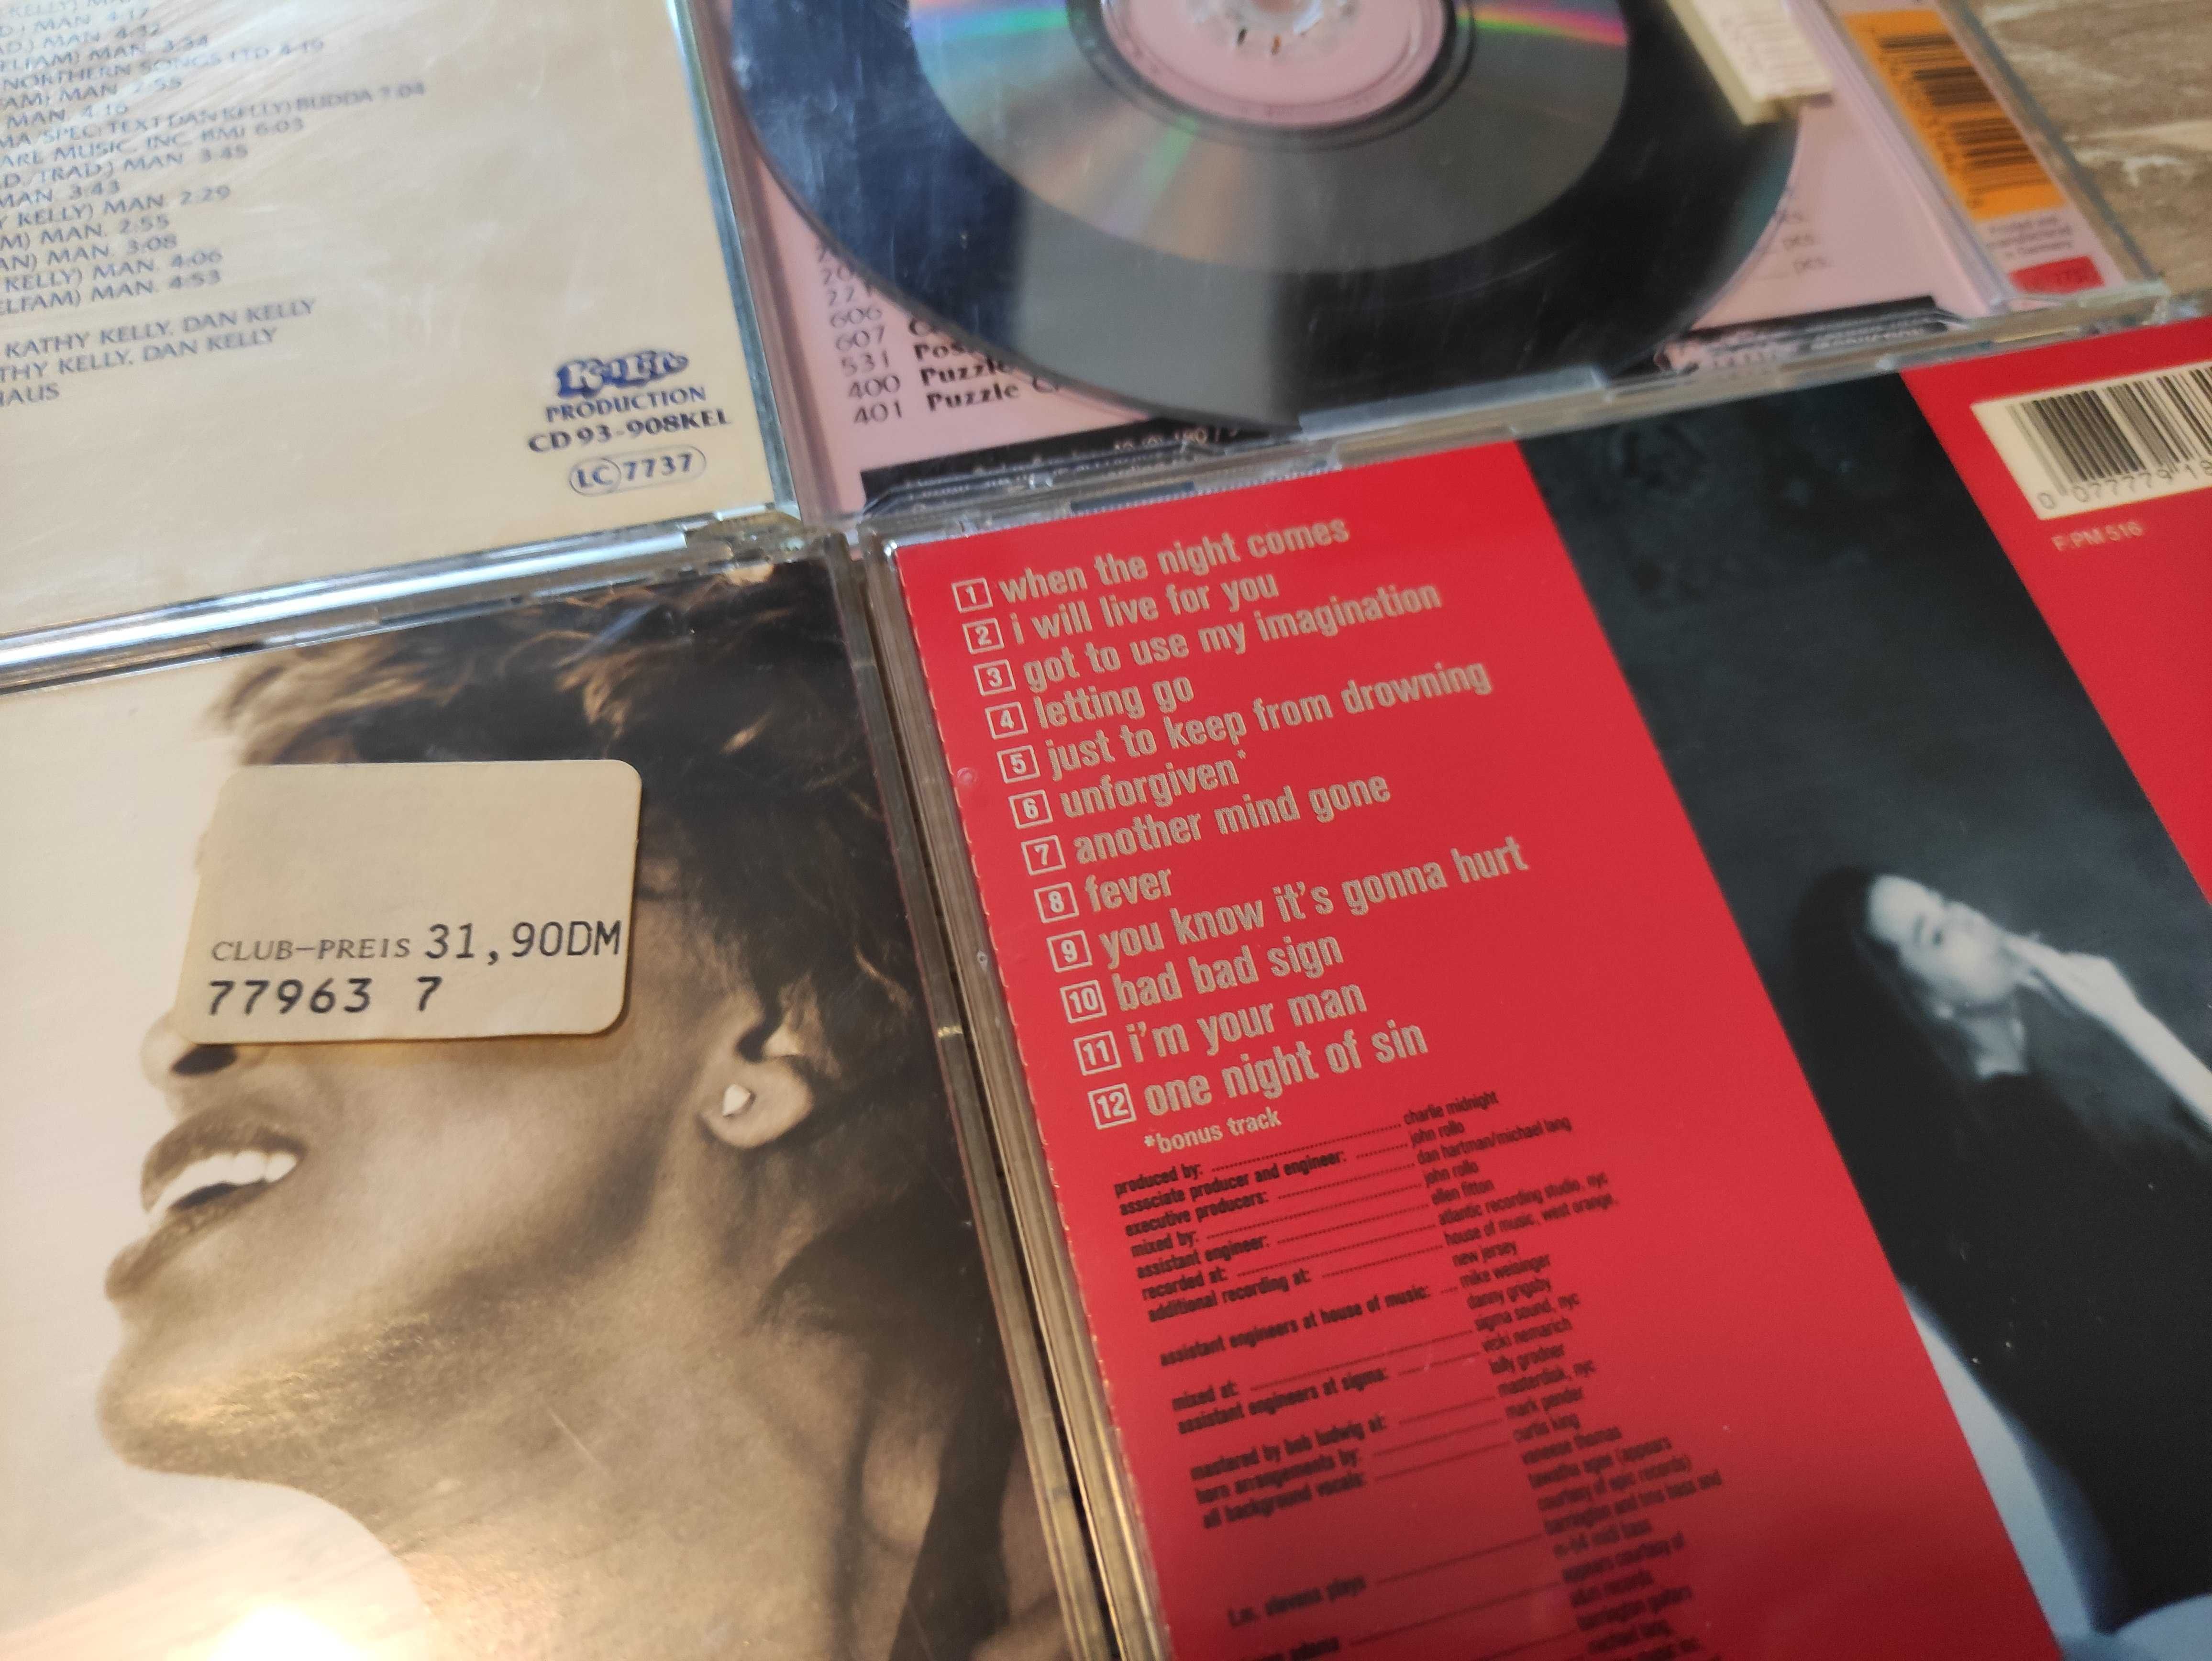 CD: The Kelly Family / Tina Turner / Joe Cocker / The Blues Brothers